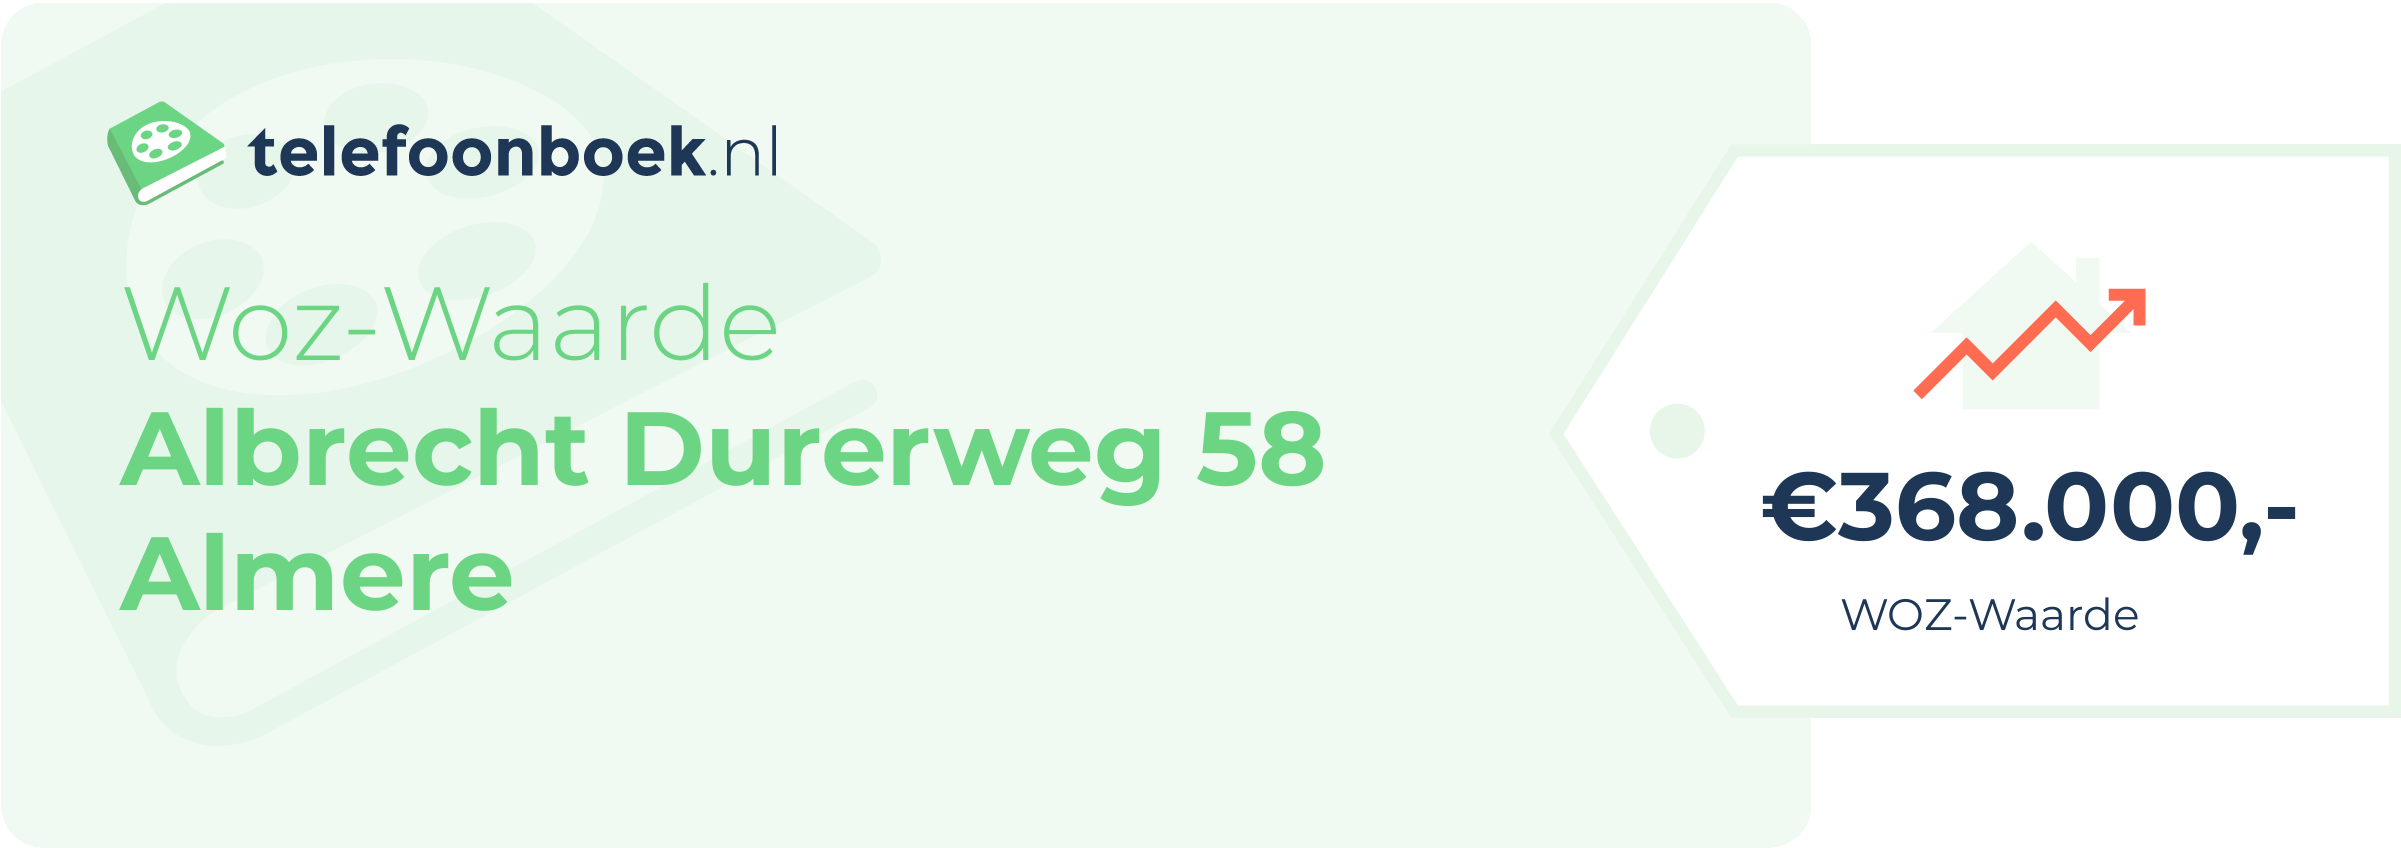 WOZ-waarde Albrecht Durerweg 58 Almere